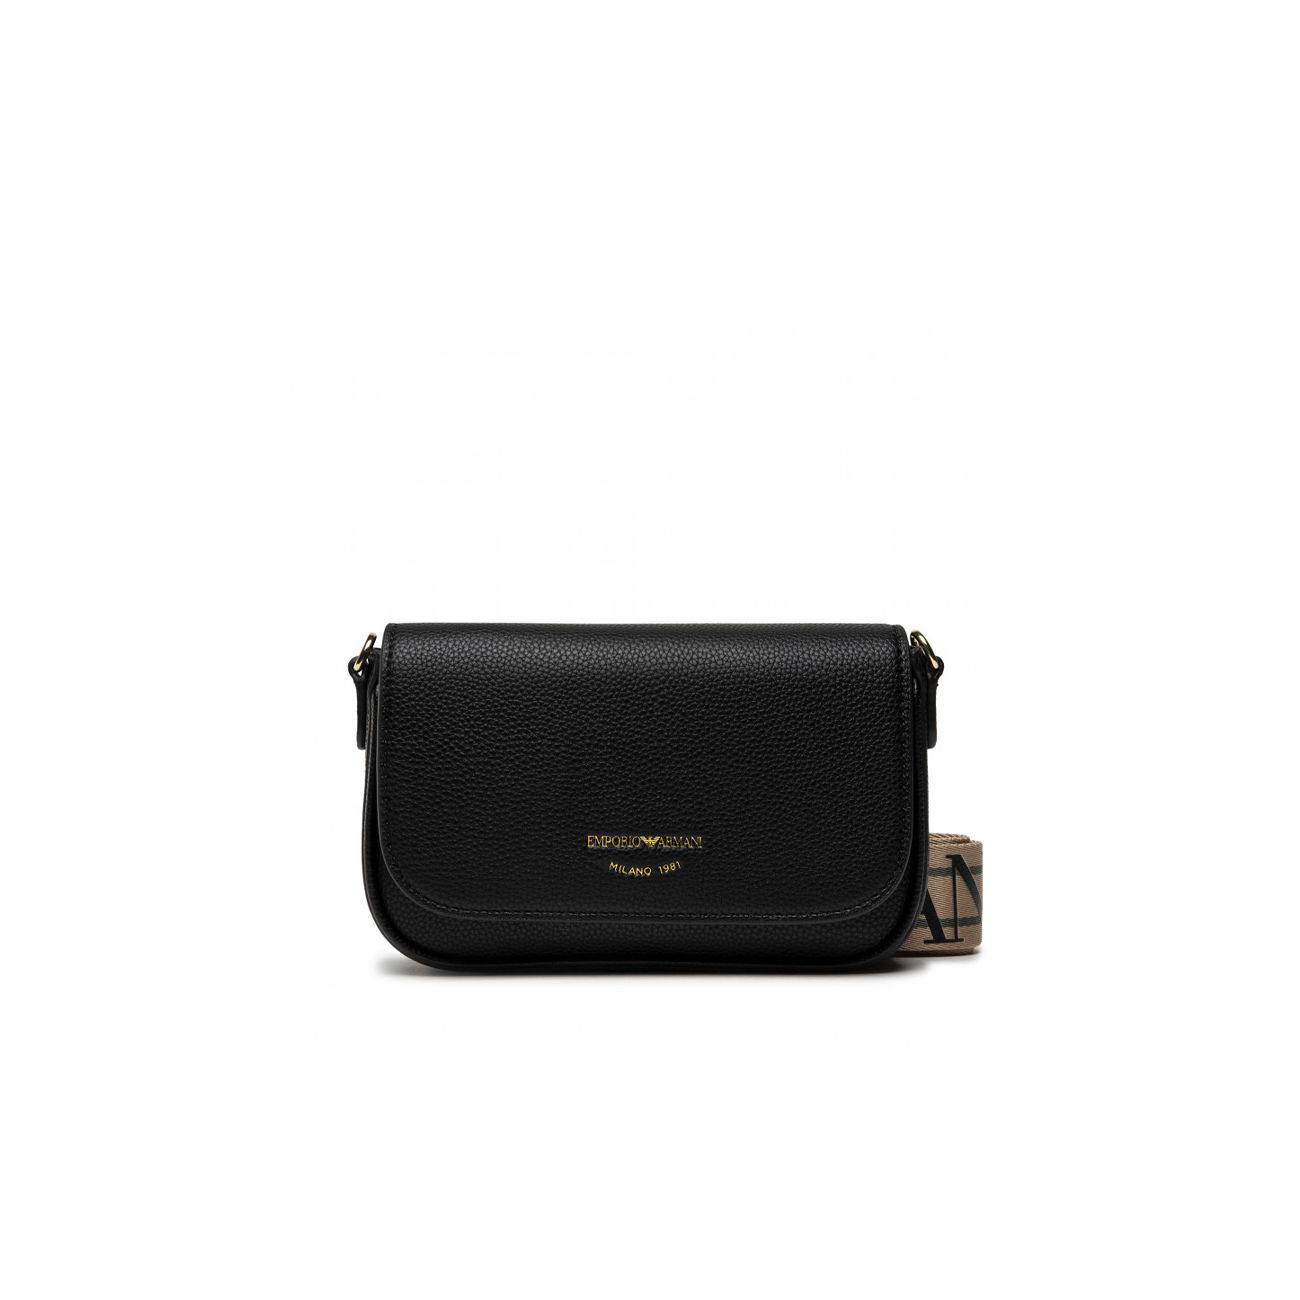 EMPORIO ARMANI: handbag for women - Natural | Emporio Armani handbag Y3D264  YVW0Y online at GIGLIO.COM